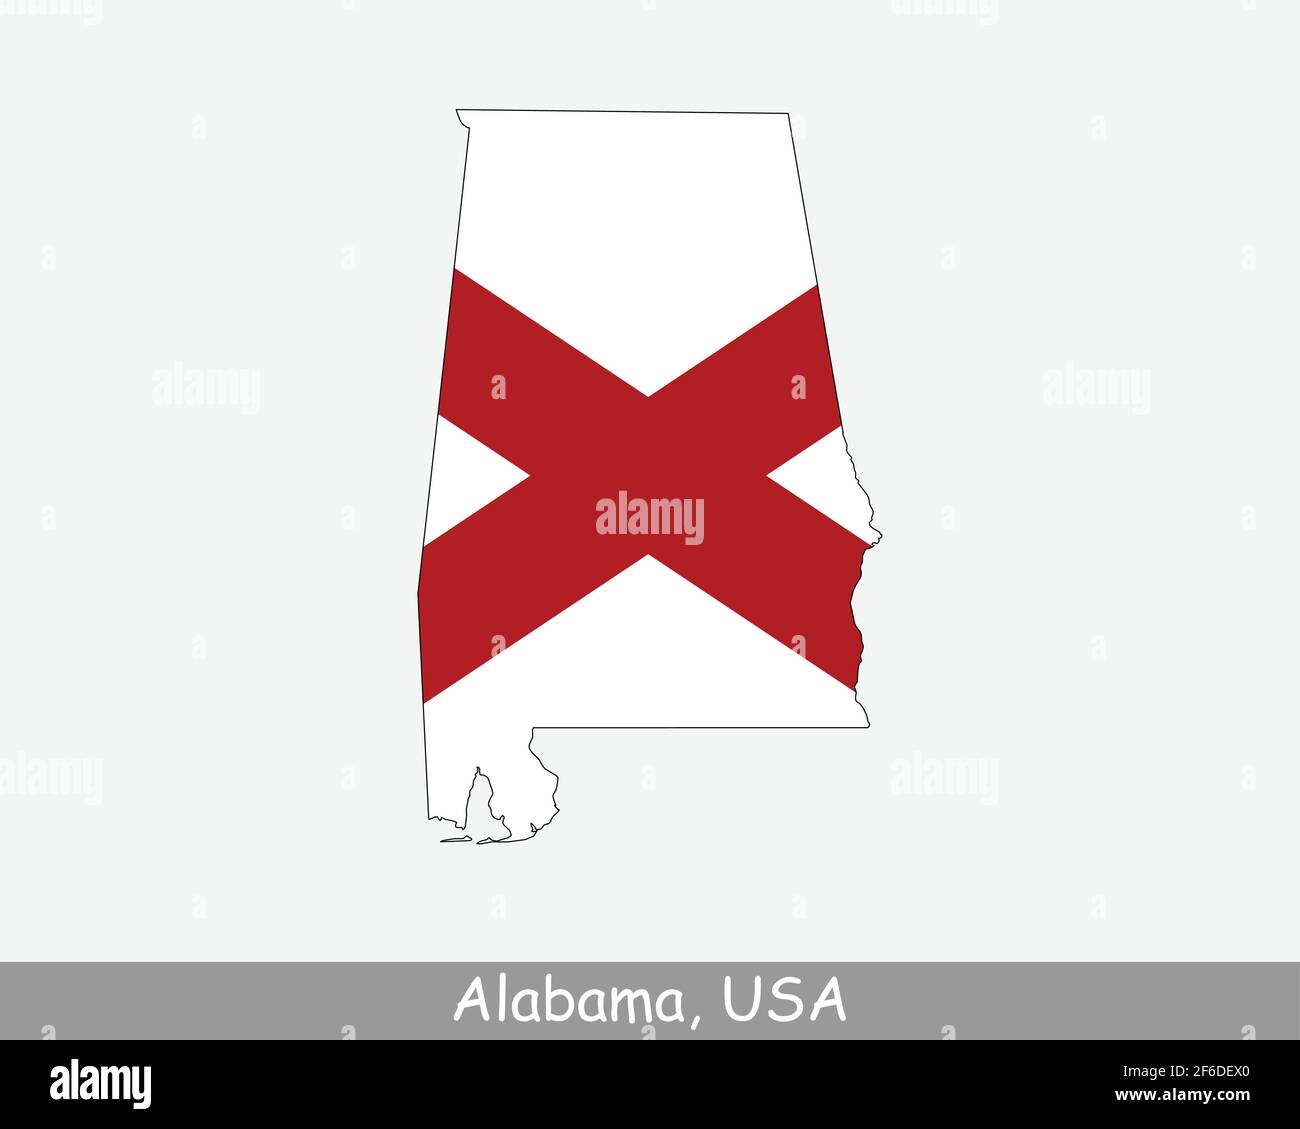 Drapeau de carte Alabama. Carte de l'Alabama, États-Unis avec le drapeau d'État de l'Alabama isolé sur fond blanc. Etats-Unis, Amérique, Etats-Unis d'Amérique, Etats-Unis d'Amérique Illustration de Vecteur